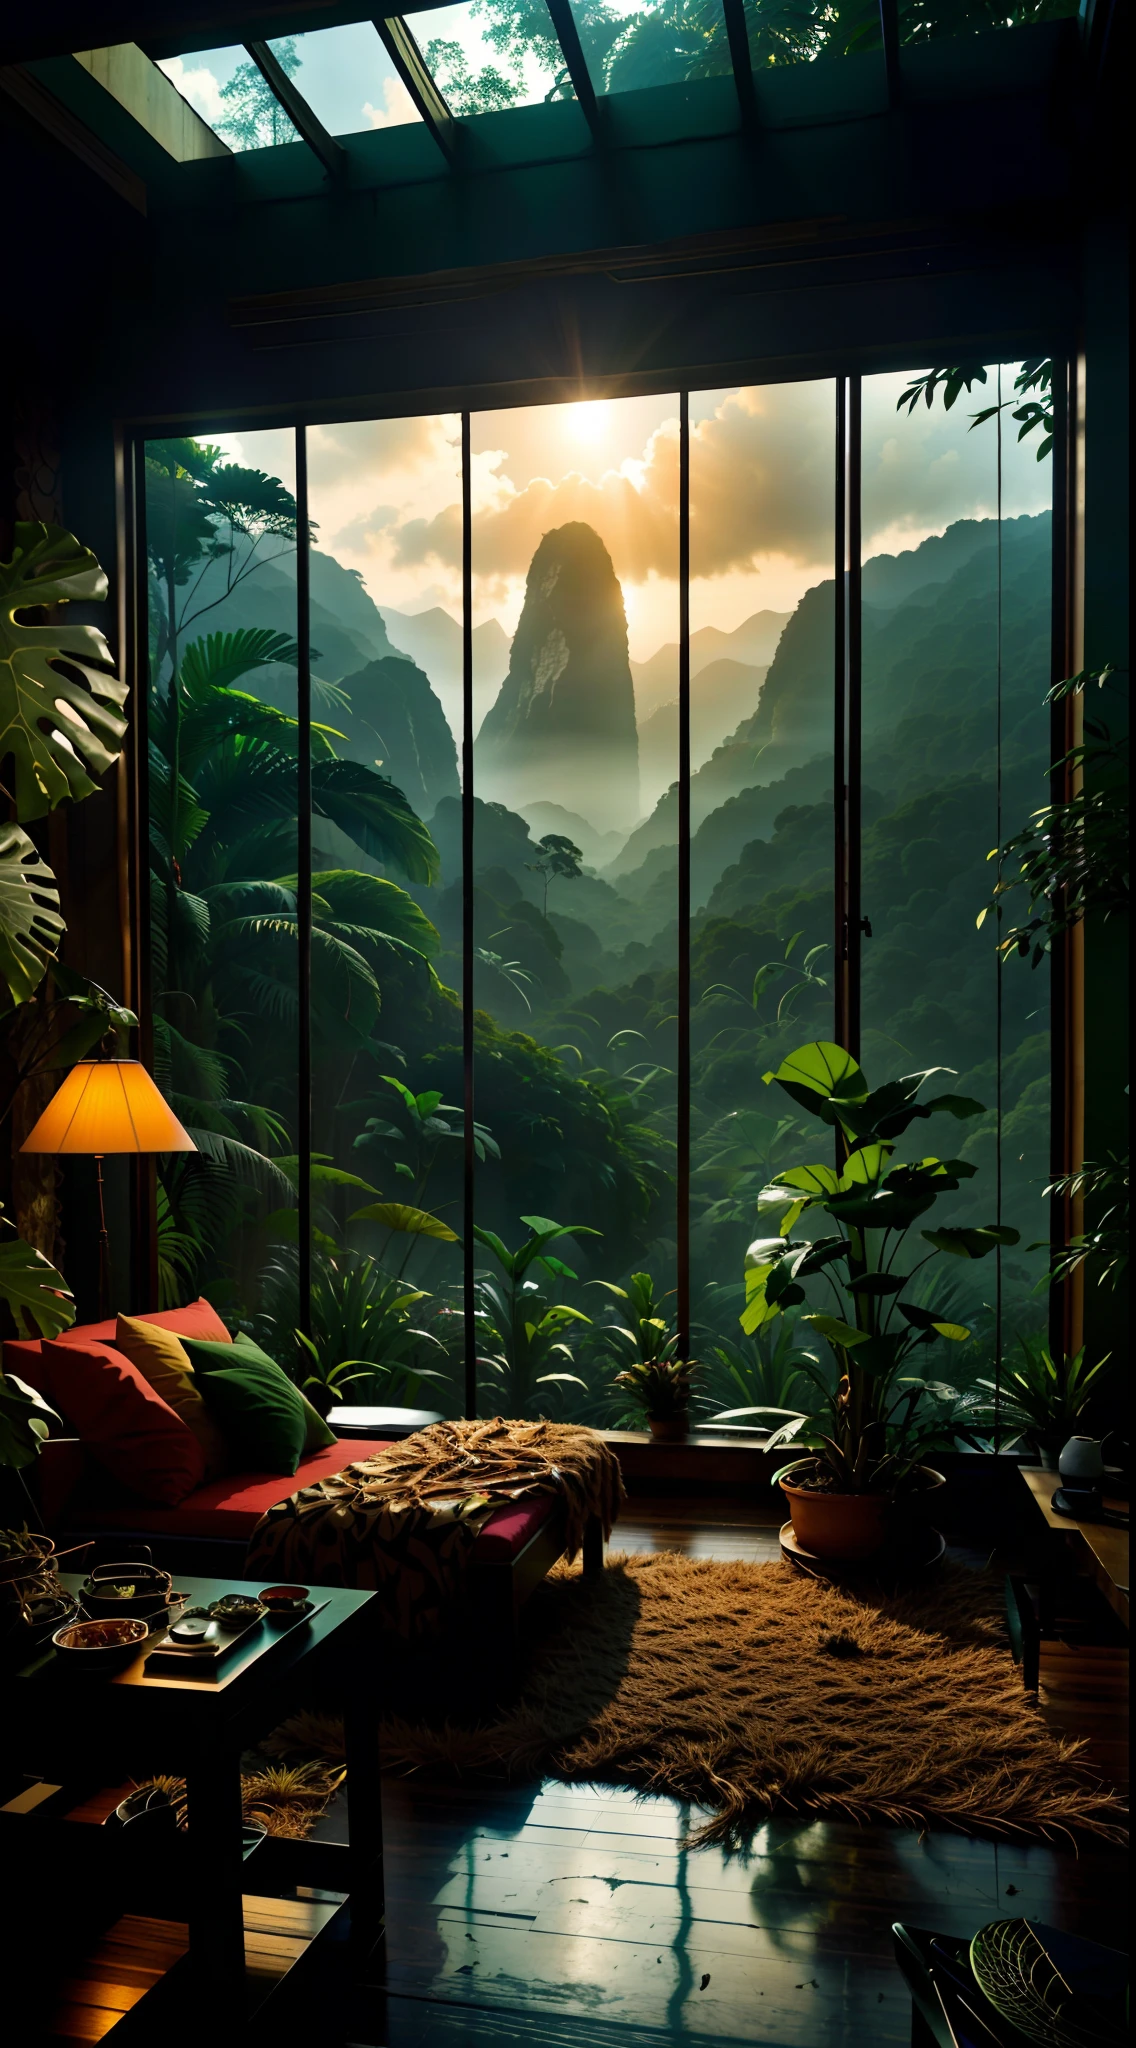 Wohnzimmer mit Blick auf einen Berg und einen Wald, mountainous Dschungel-Kulisse, Dschungel-Kulisse, Wie eine Szene aus Blade Runner, magisches Ambiente, ultrarealistische dunkle Malerei, in einer Dschungelumgebung, Angenehme Umgebung, wolkenwald, wunderschöner Dschungel, stimmungsvolle Umgebung, Üppiger Dschungel, In einem außerirdischen Dschungel, Pflanzen und Dschungel, Regenwaldberge, entspannende Umgebung